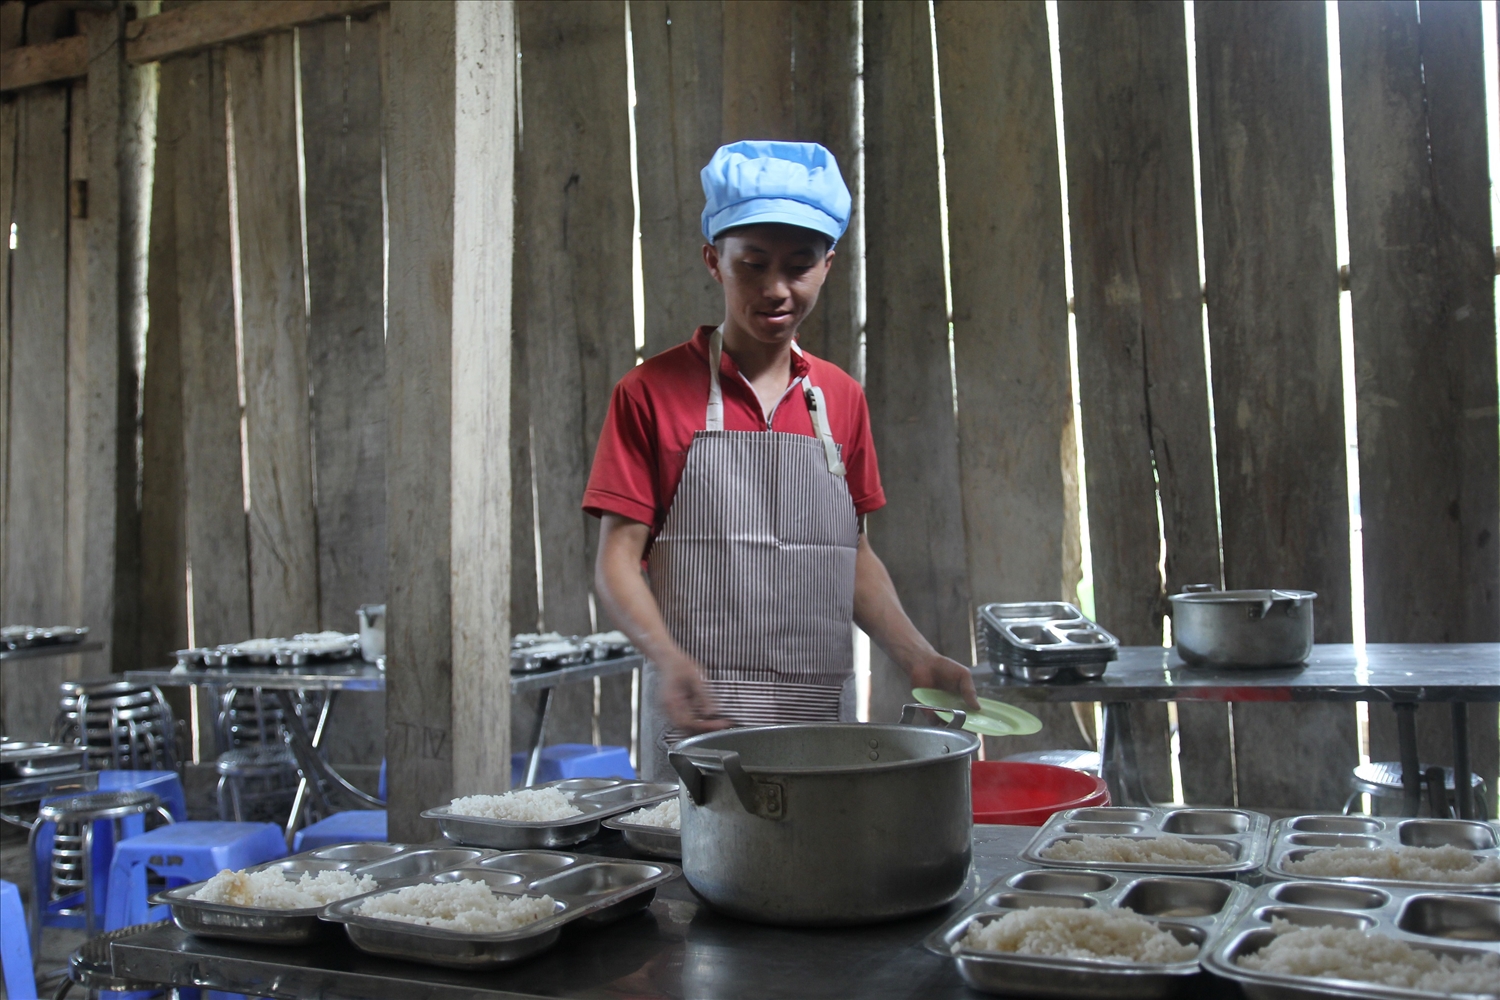 Ngoài dạy học, các thầy cũng là đầu bếp mang đến cho các em học sinh những bữa cơm nóng hổi